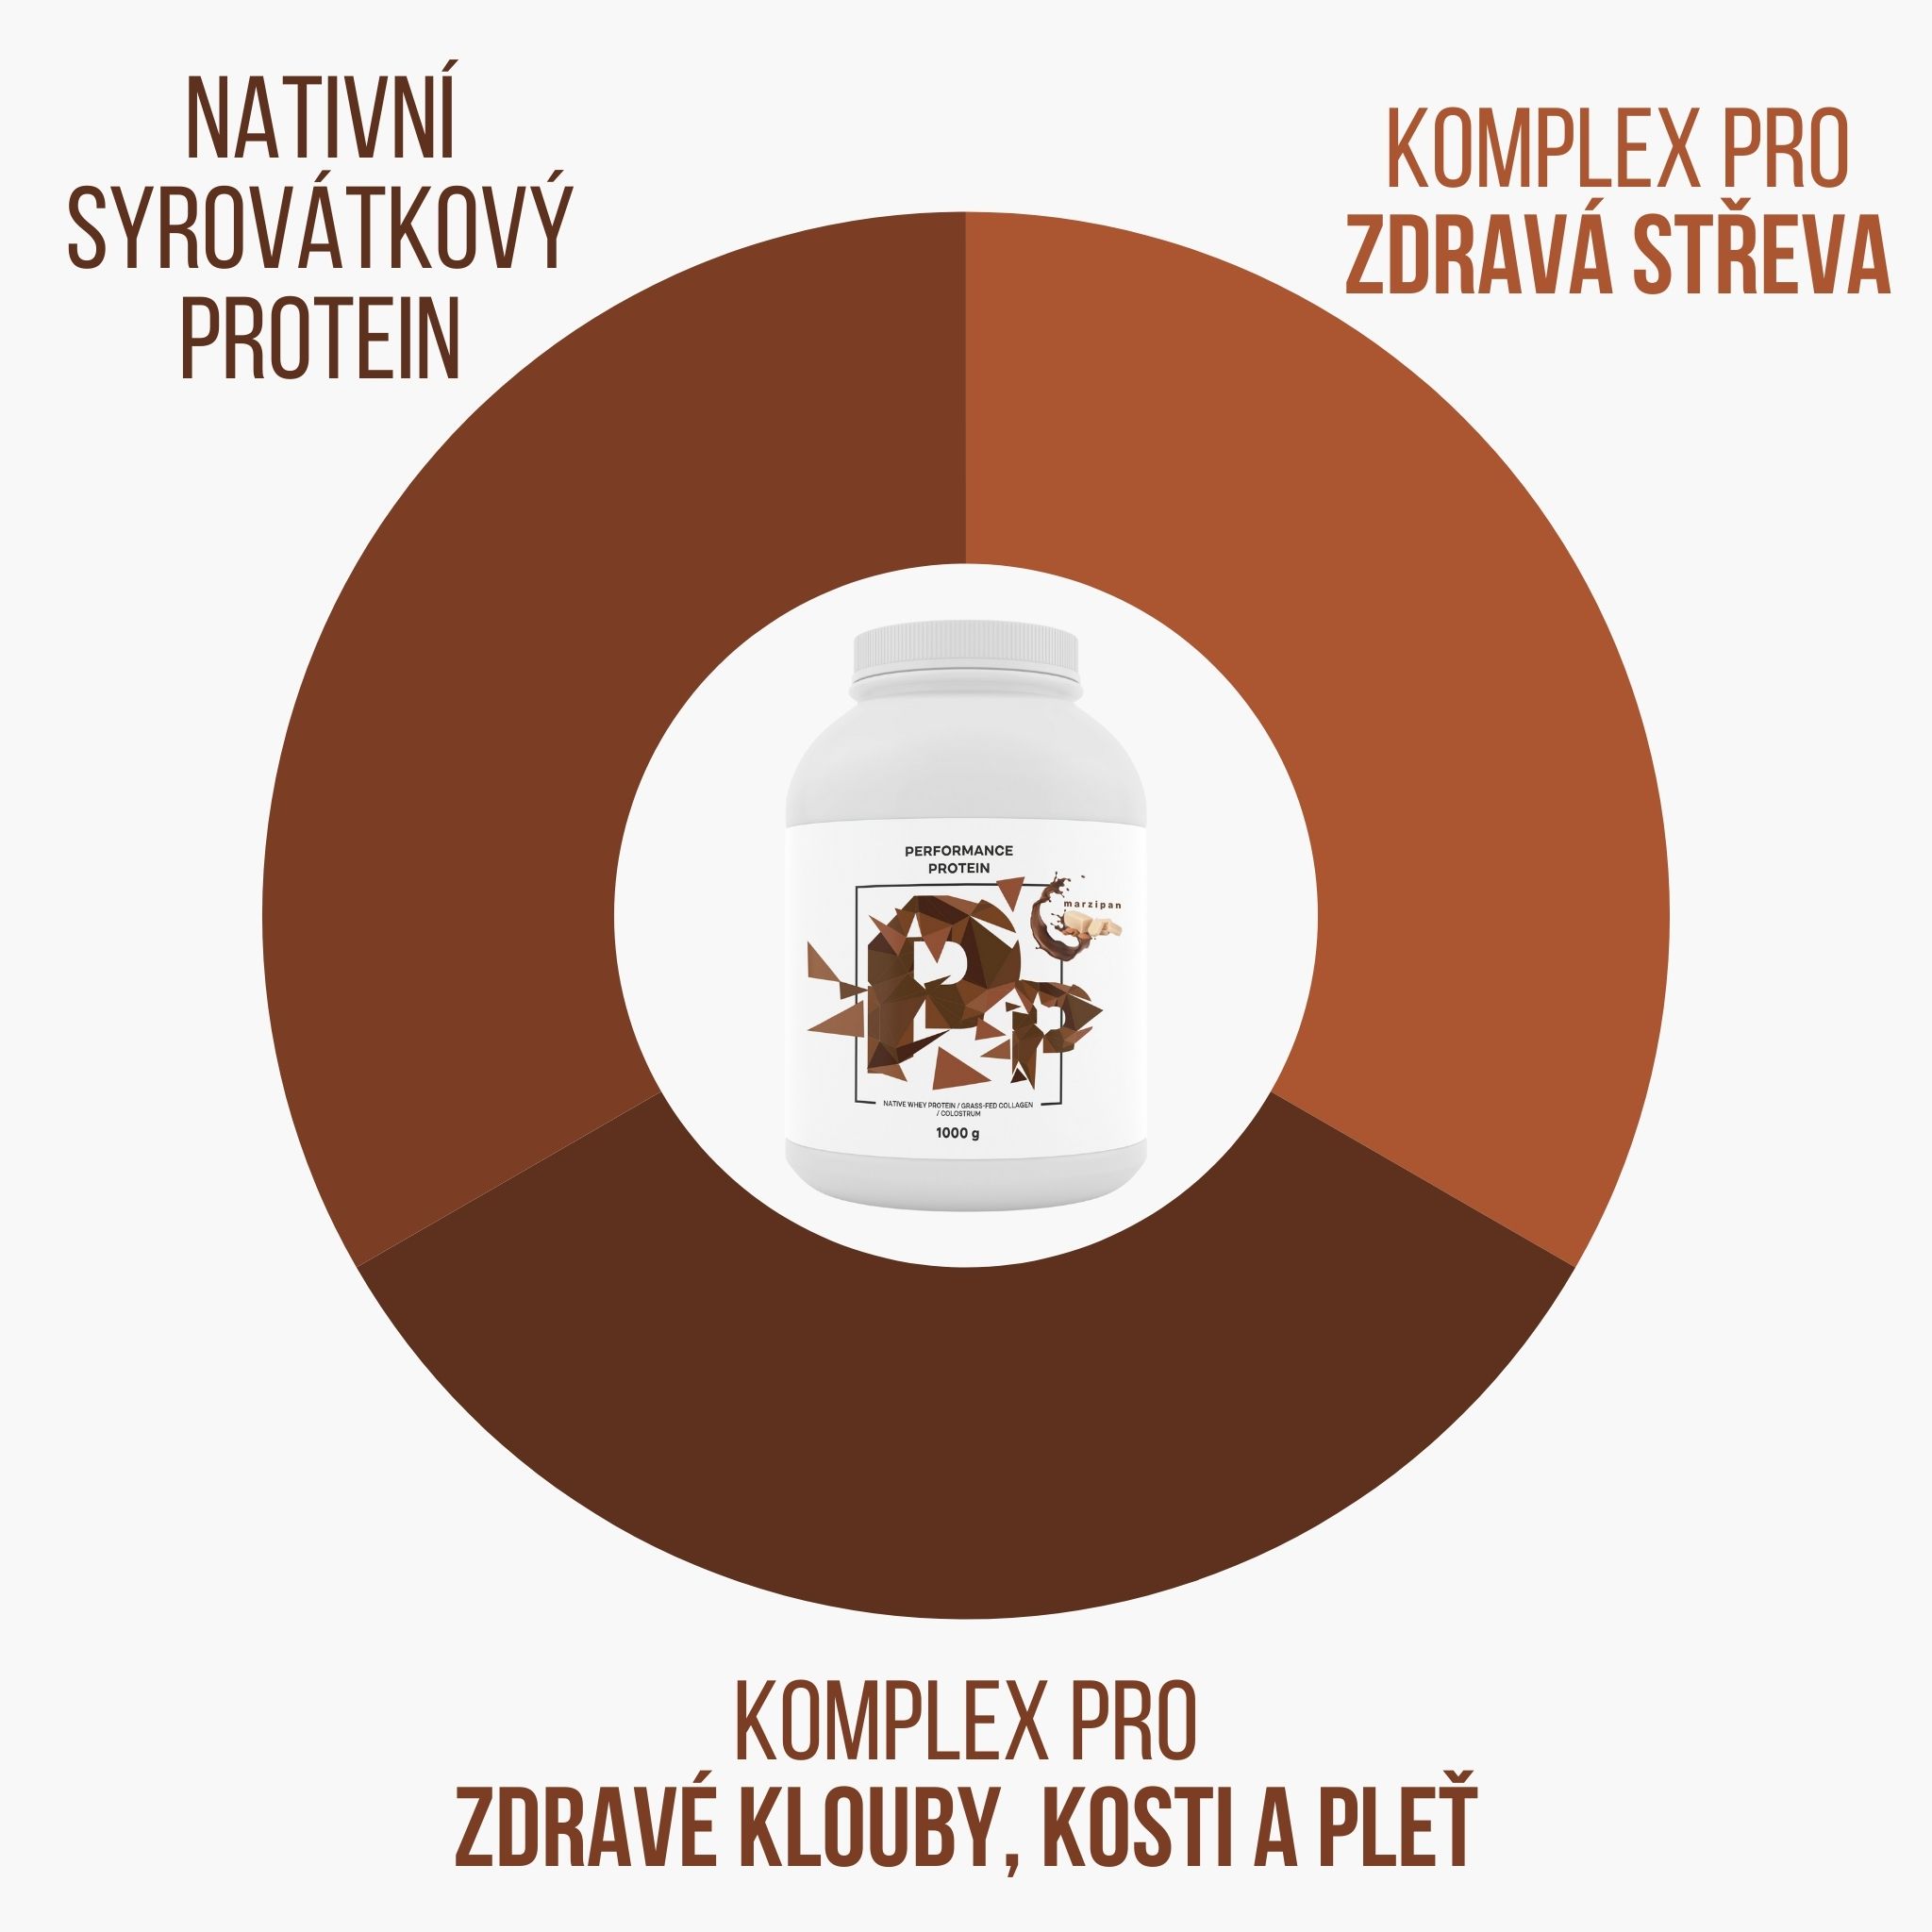 Nativní syrovátkový protein